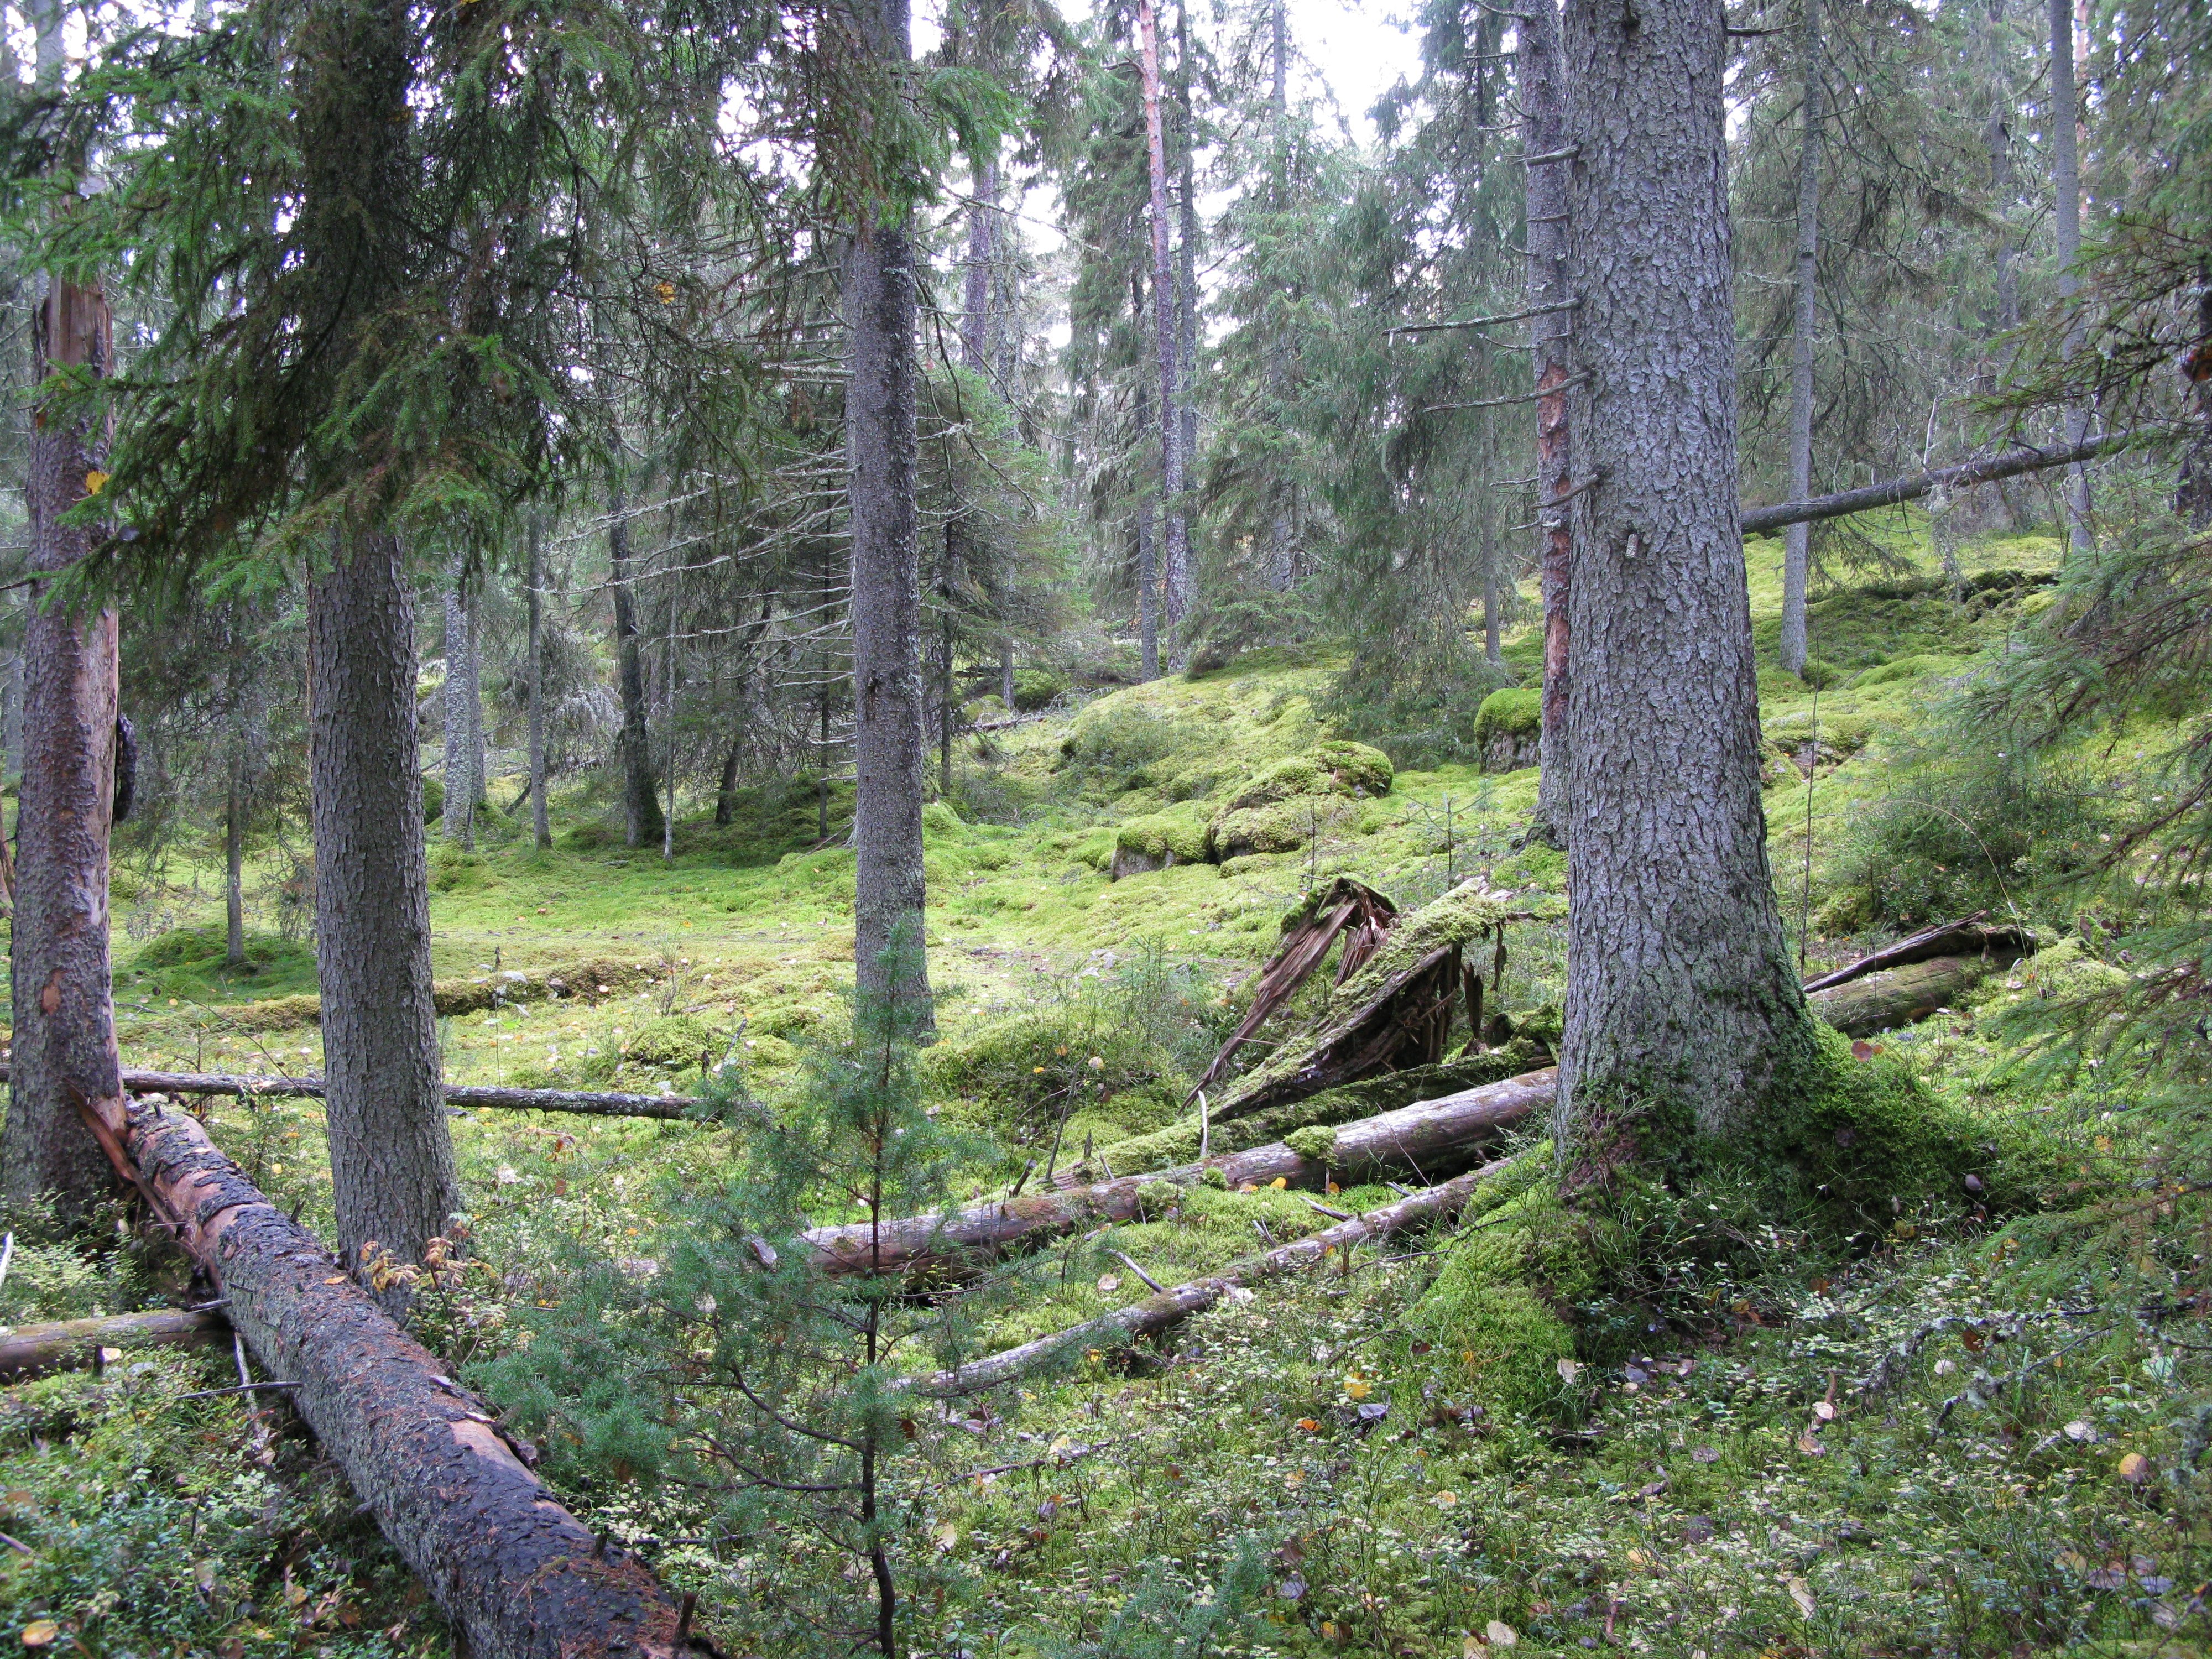 Urskog med mossrik, något stenig och kuperad mark. På marken ligger flera omkullfallna träd.